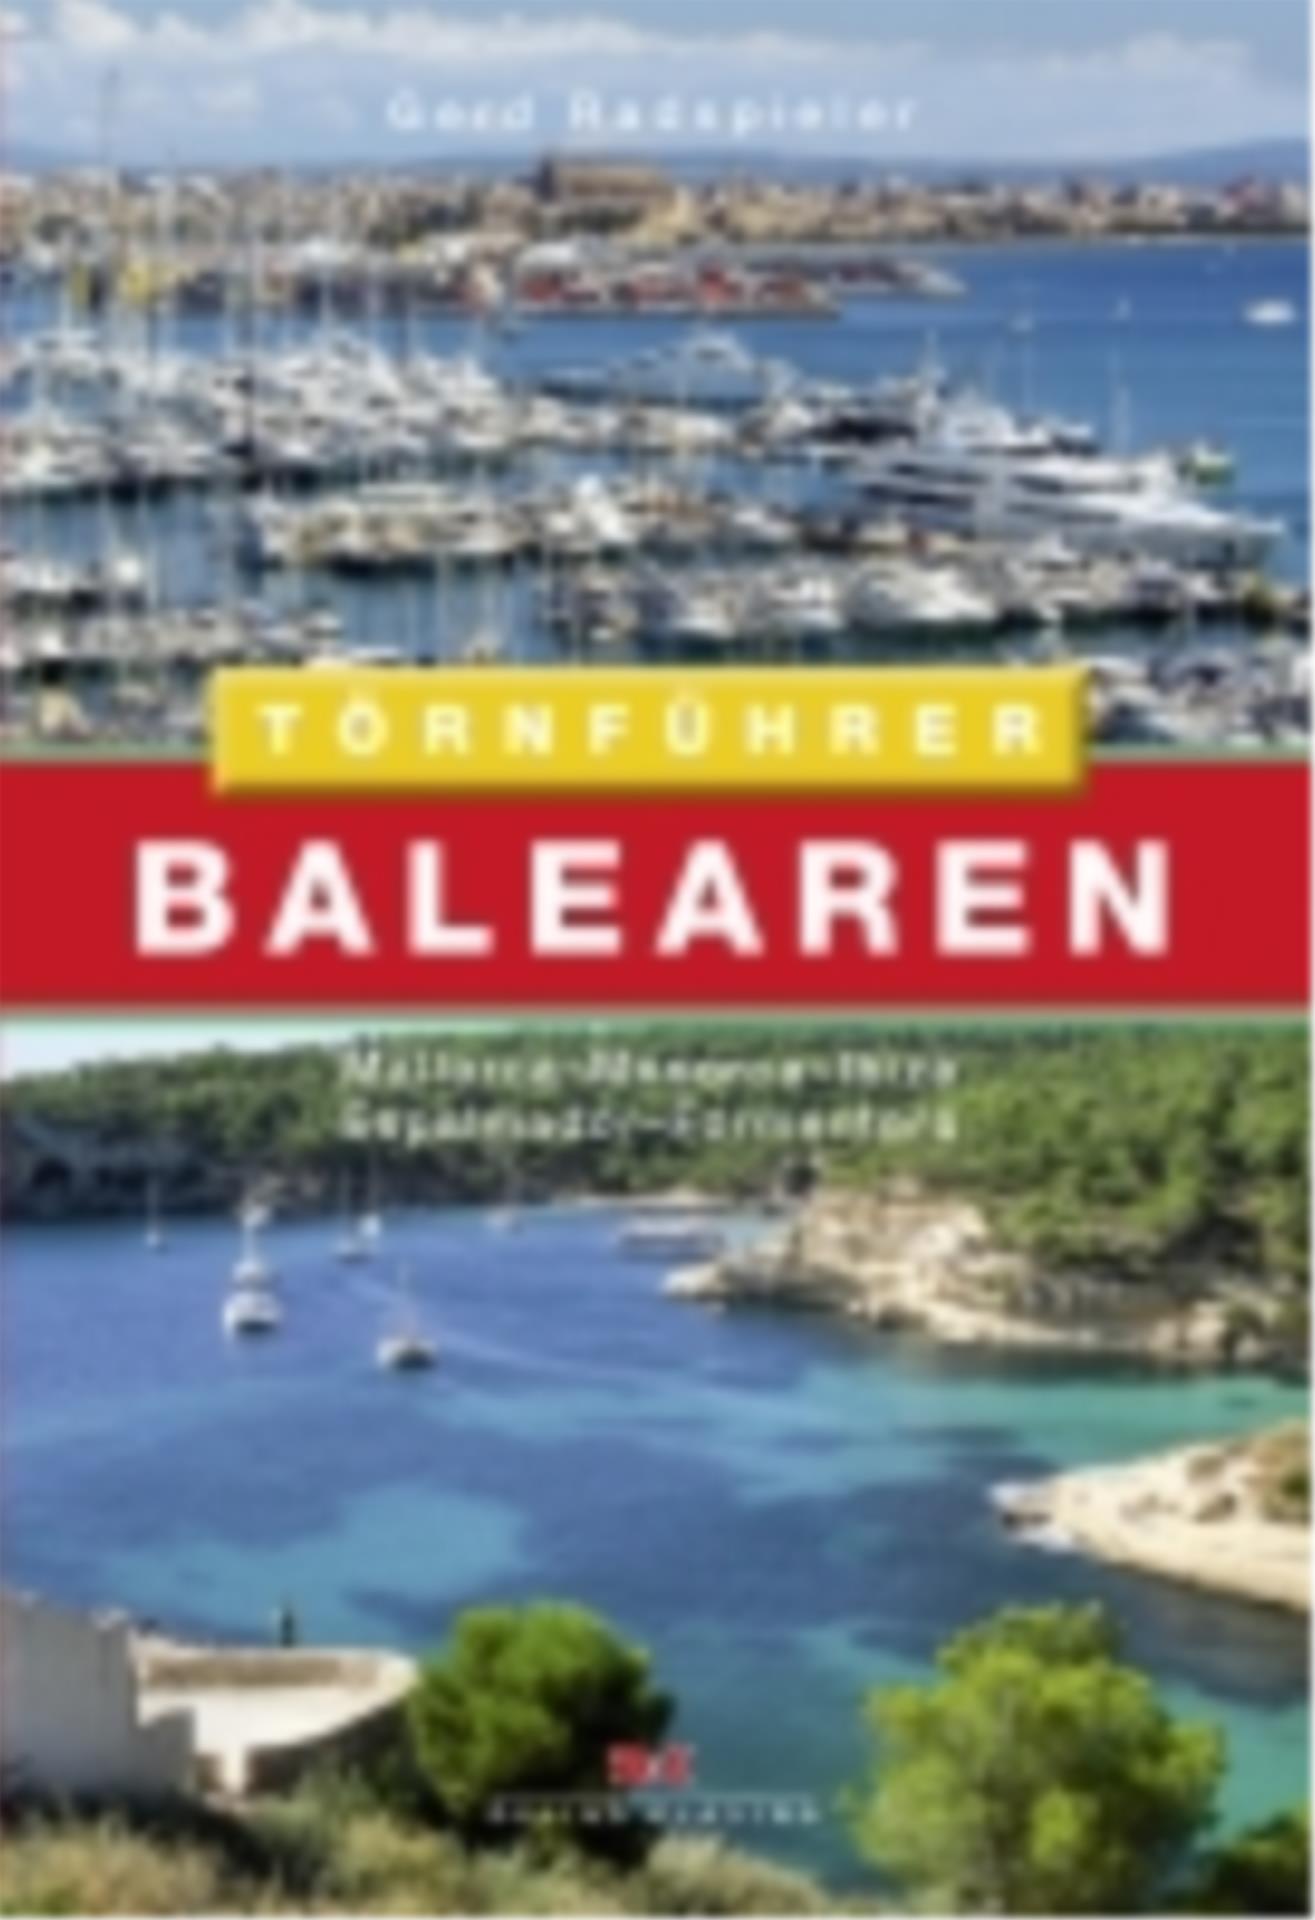 Balearen    Mallorca – Menorca – Ibiza – Espalmador – Formentera